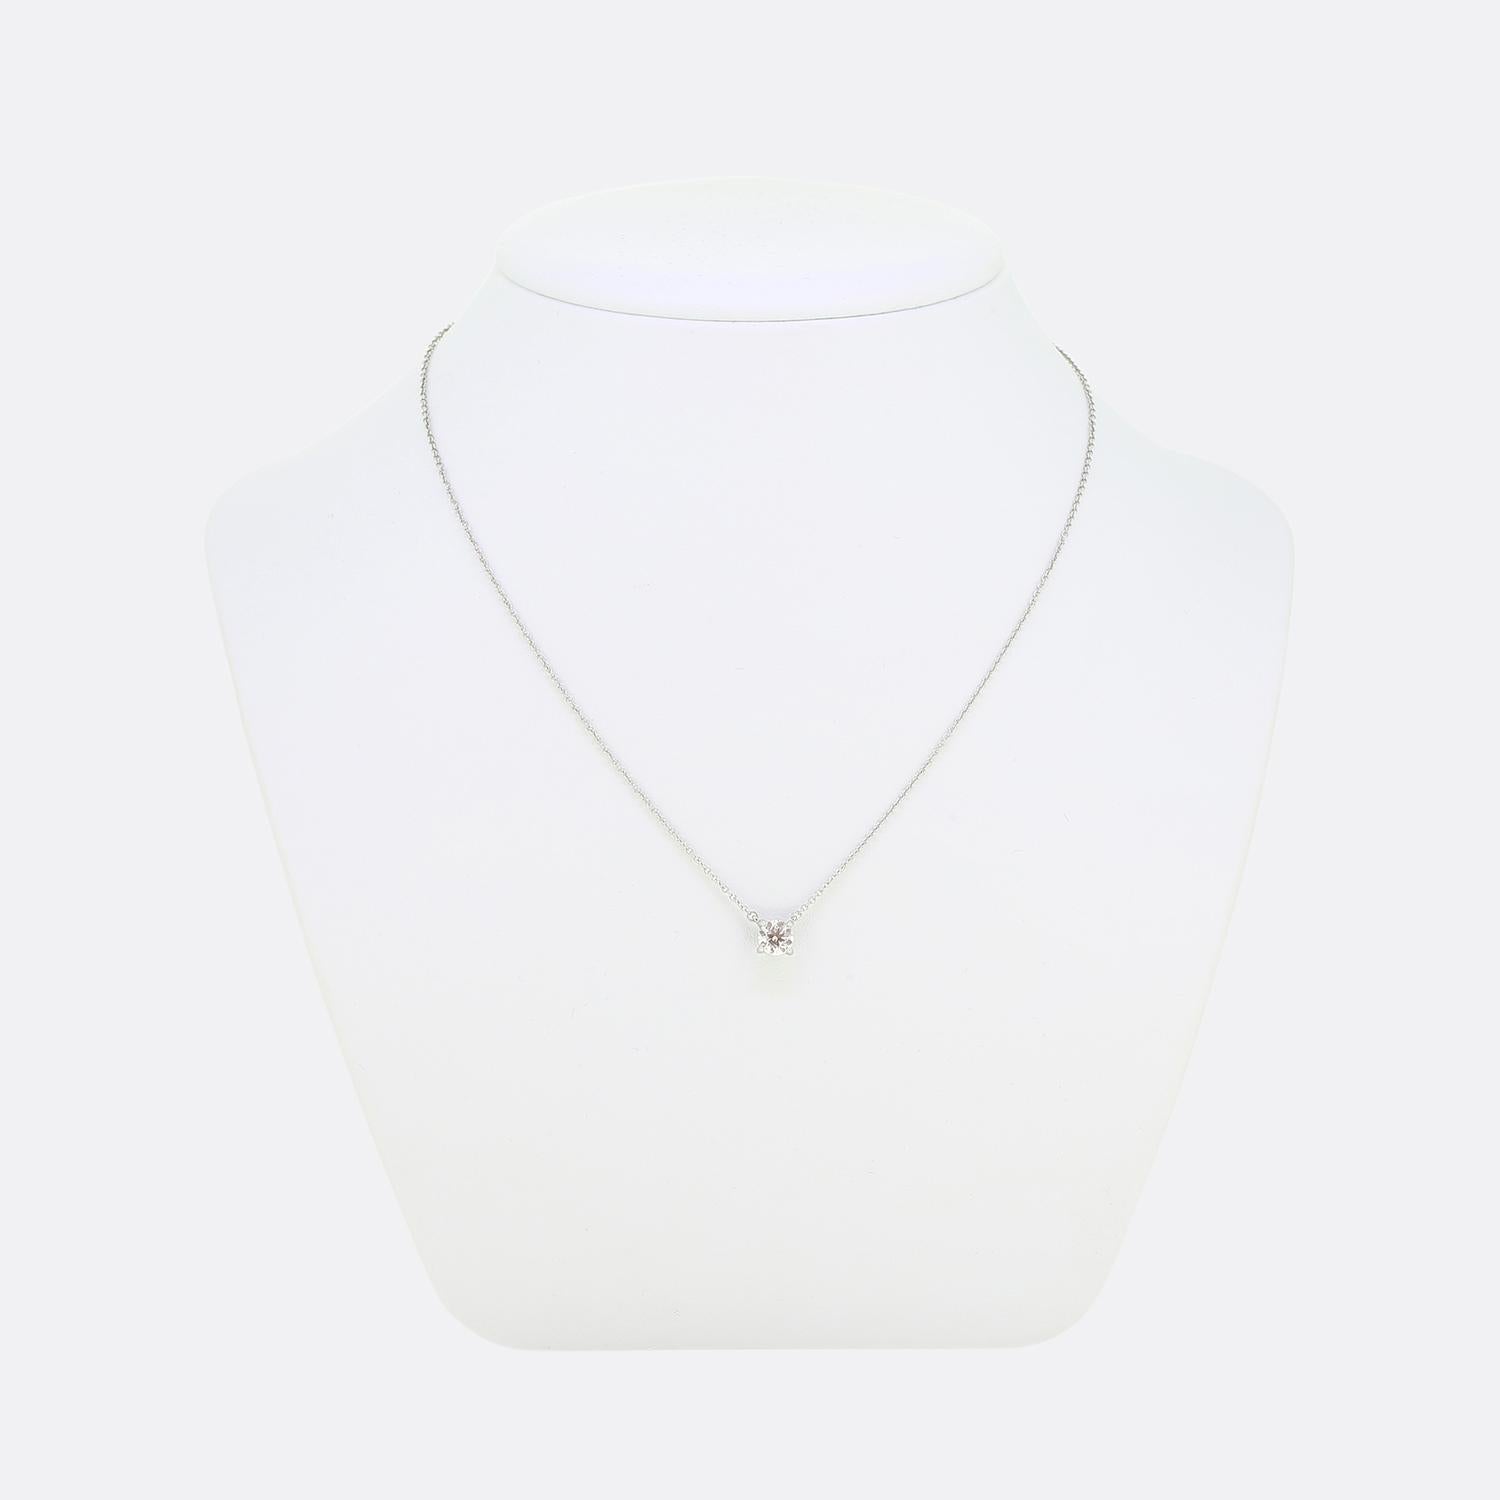 Nous avons ici un collier solitaire classique en diamants du créateur de bijoux de renommée mondiale, Tiffany & Co. Cette pièce met en valeur un diamant rond de 0,60ct taillé en brillant dans un serti à quatre griffes, suspendu à une fine chaîne en